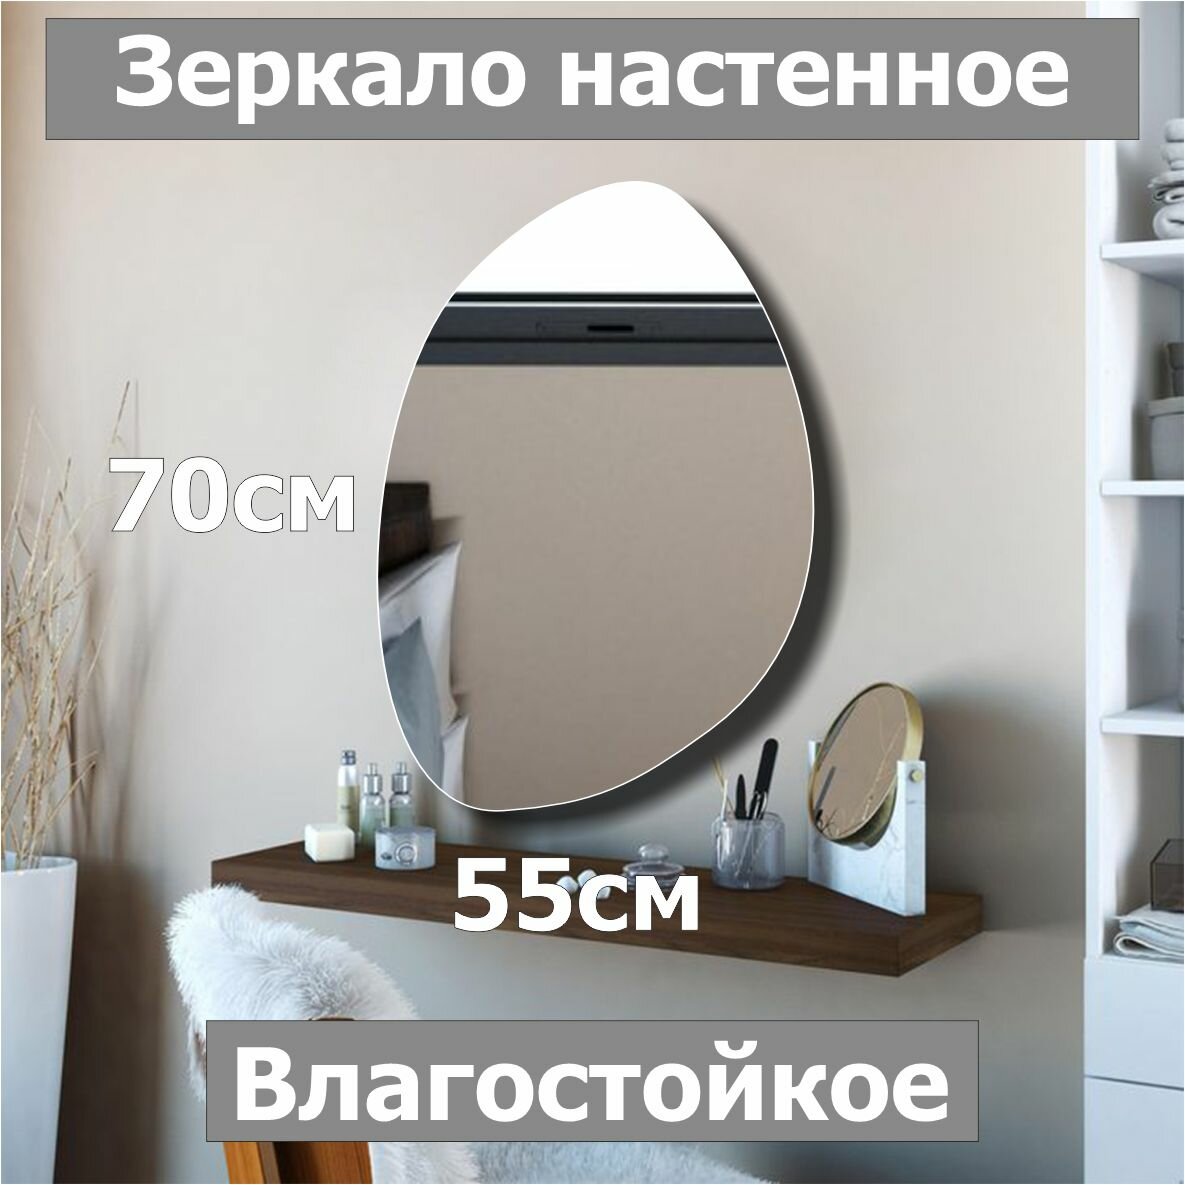 Зеркало настенное, фигурное "Камень№5", 70х55см, ассиметричное, интерьерное, влагостойкое, без рамы, для ванной, прихожей, гостиной, спальни.